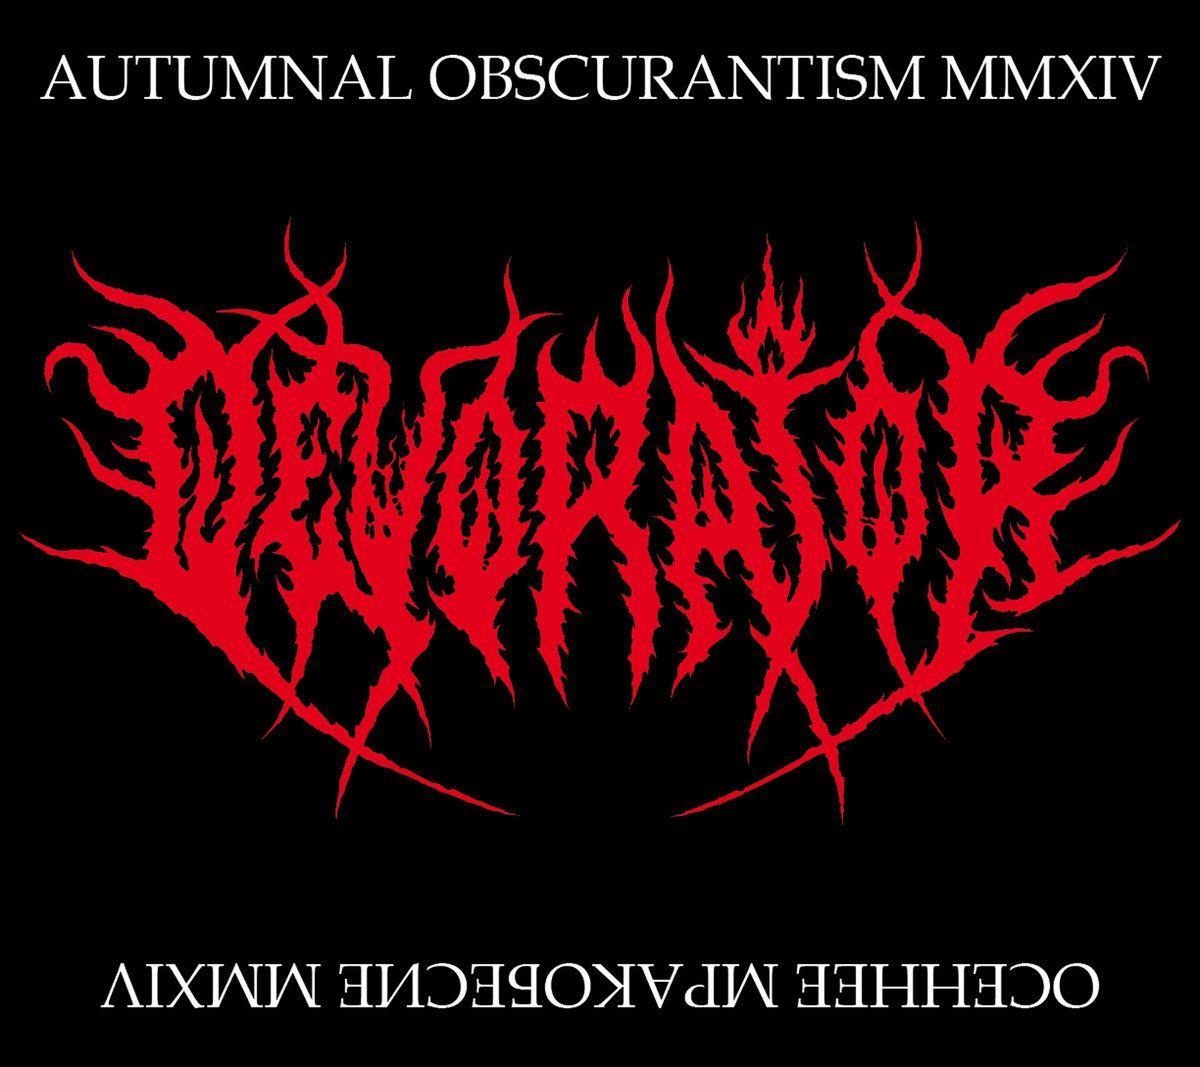 Mmxiv Logo - Осеннее Мракобесие MMXIV (Autumnal Obscurantism MMXIV) | Thou Shalt ...